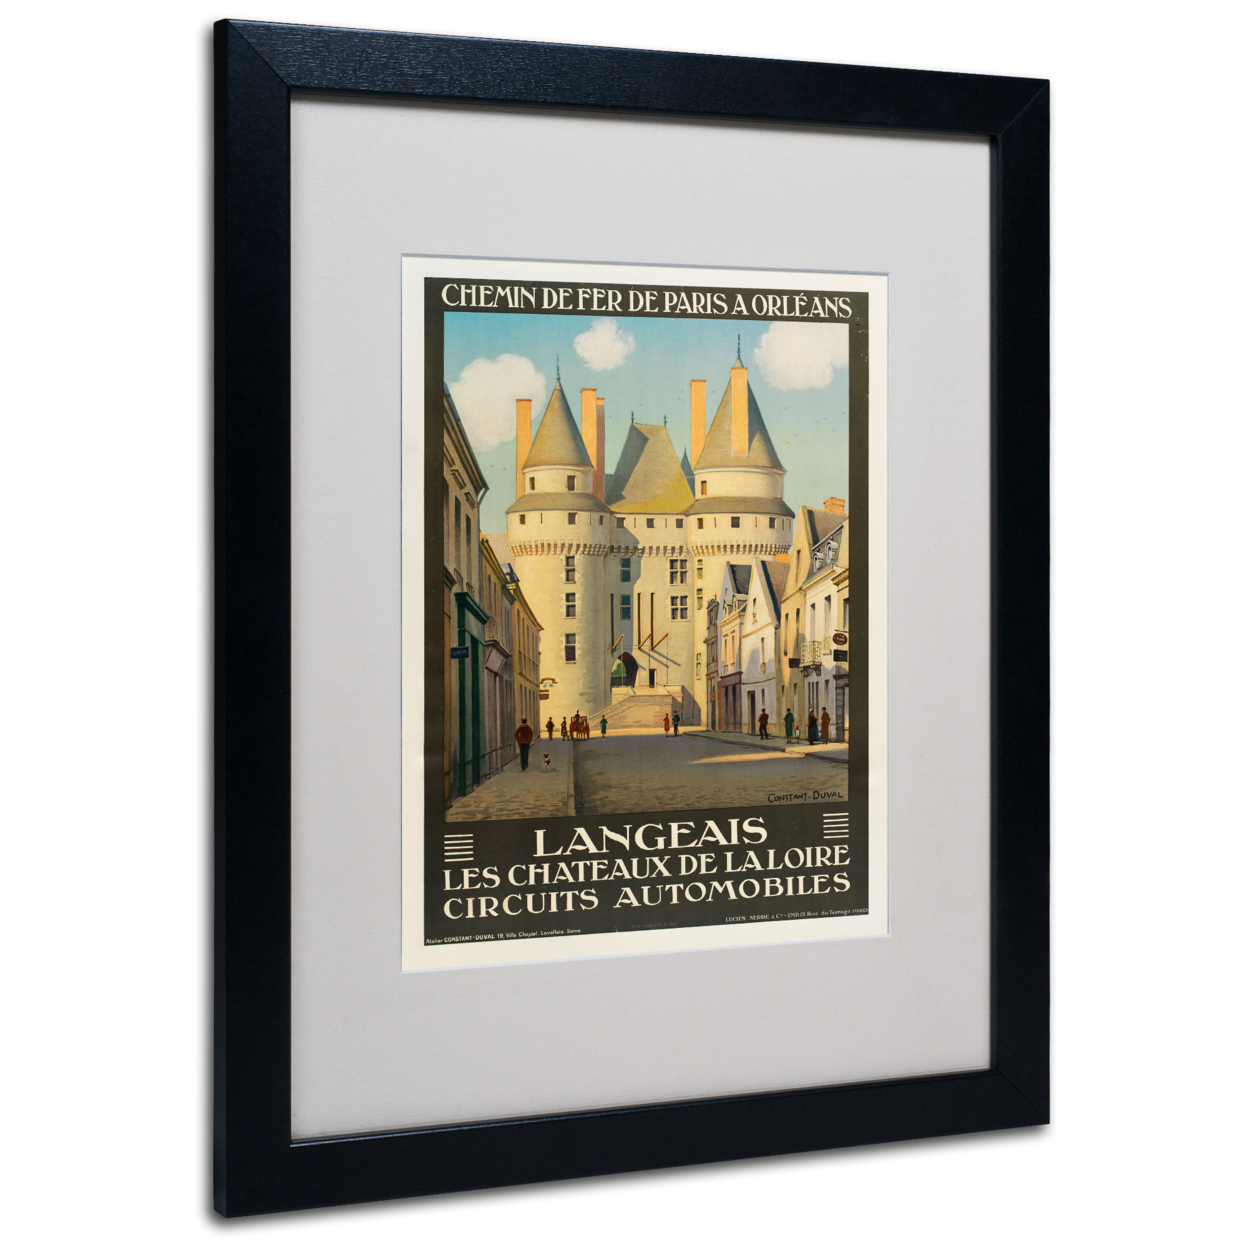 Les Chateaux De La Langeais' Black Wooden Framed Art 18 X 22 Inches